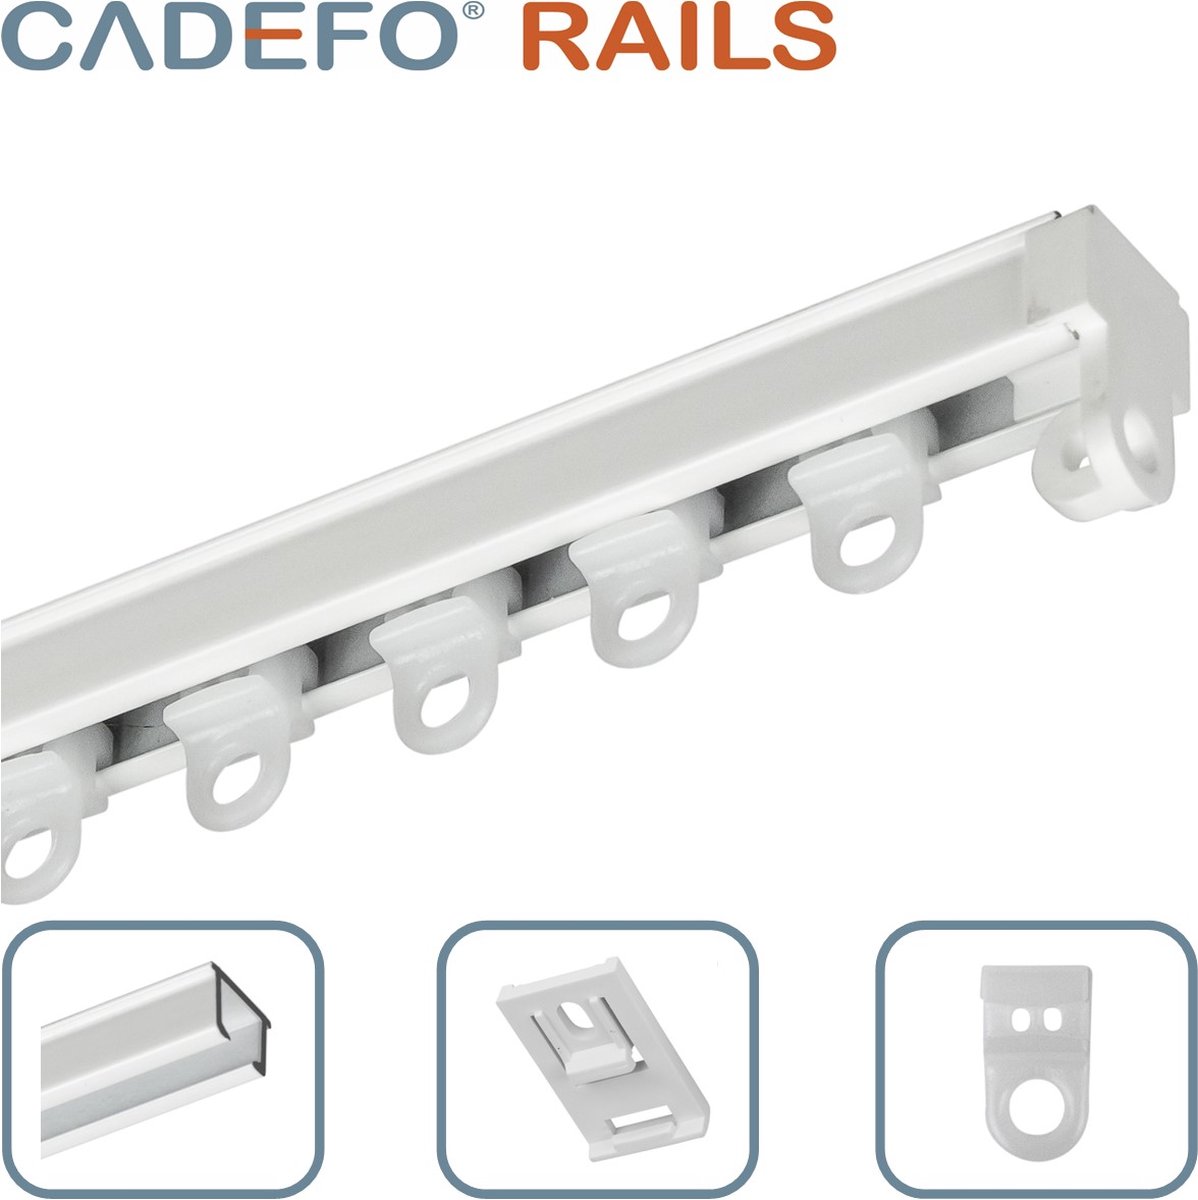 CADEFO RAILS (301 - 350 cm) Gordijnrails - Compleet op maat! - UIT 1 STUK - Leverbaar tot 6 meter - Plafondbevestiging - Lengte 342 cm